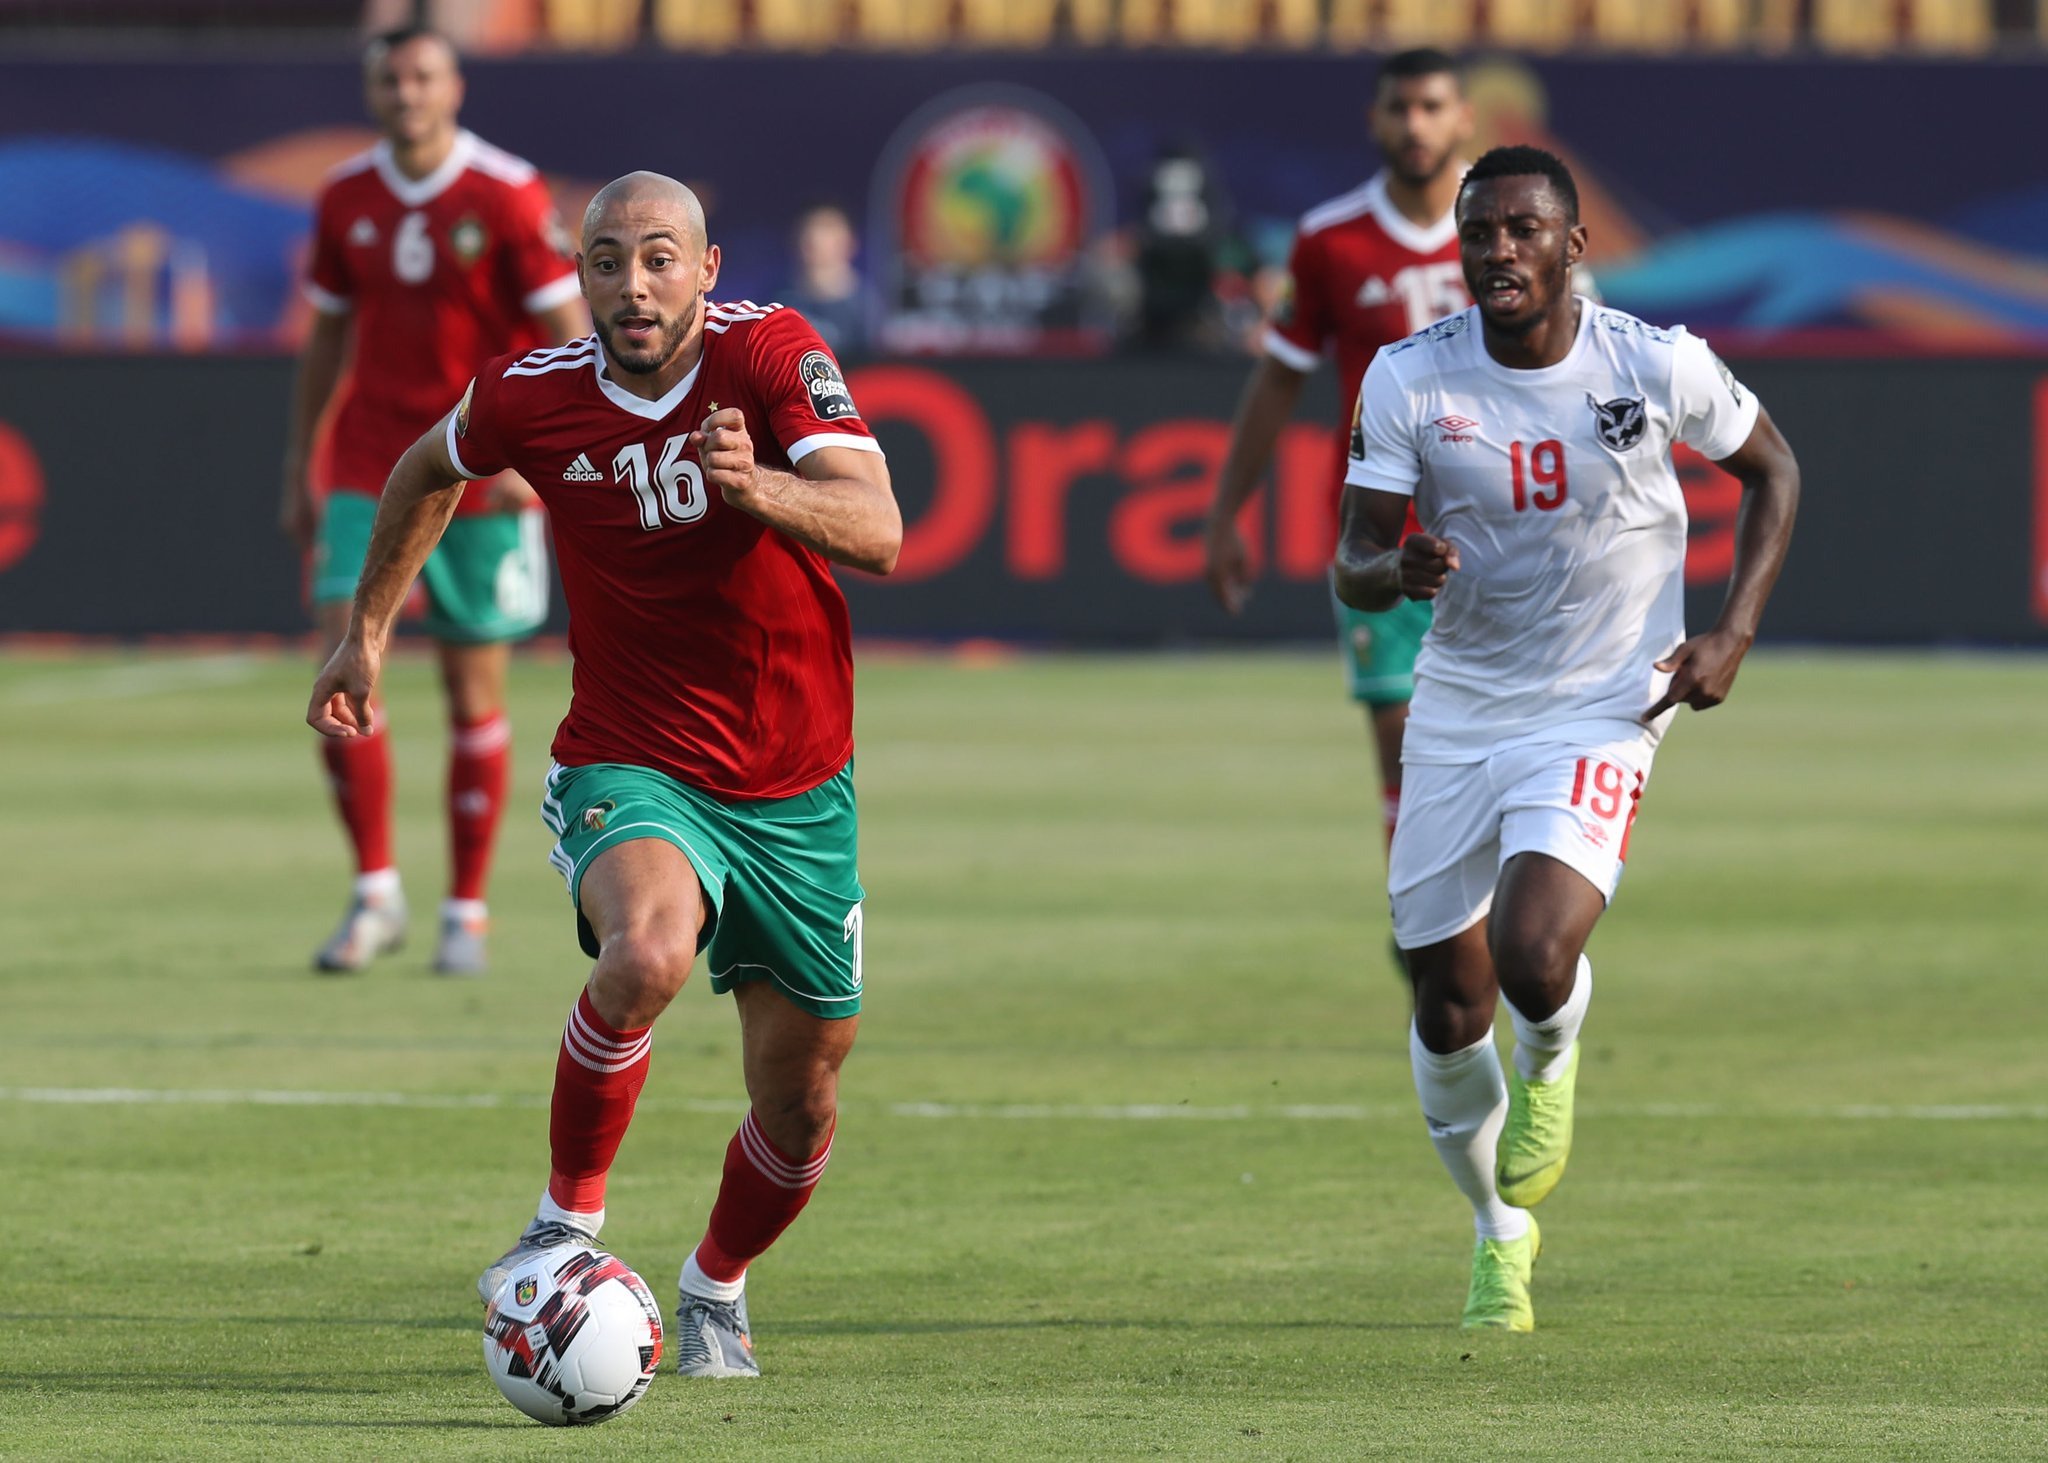 مباراة المغرب وناميبيا